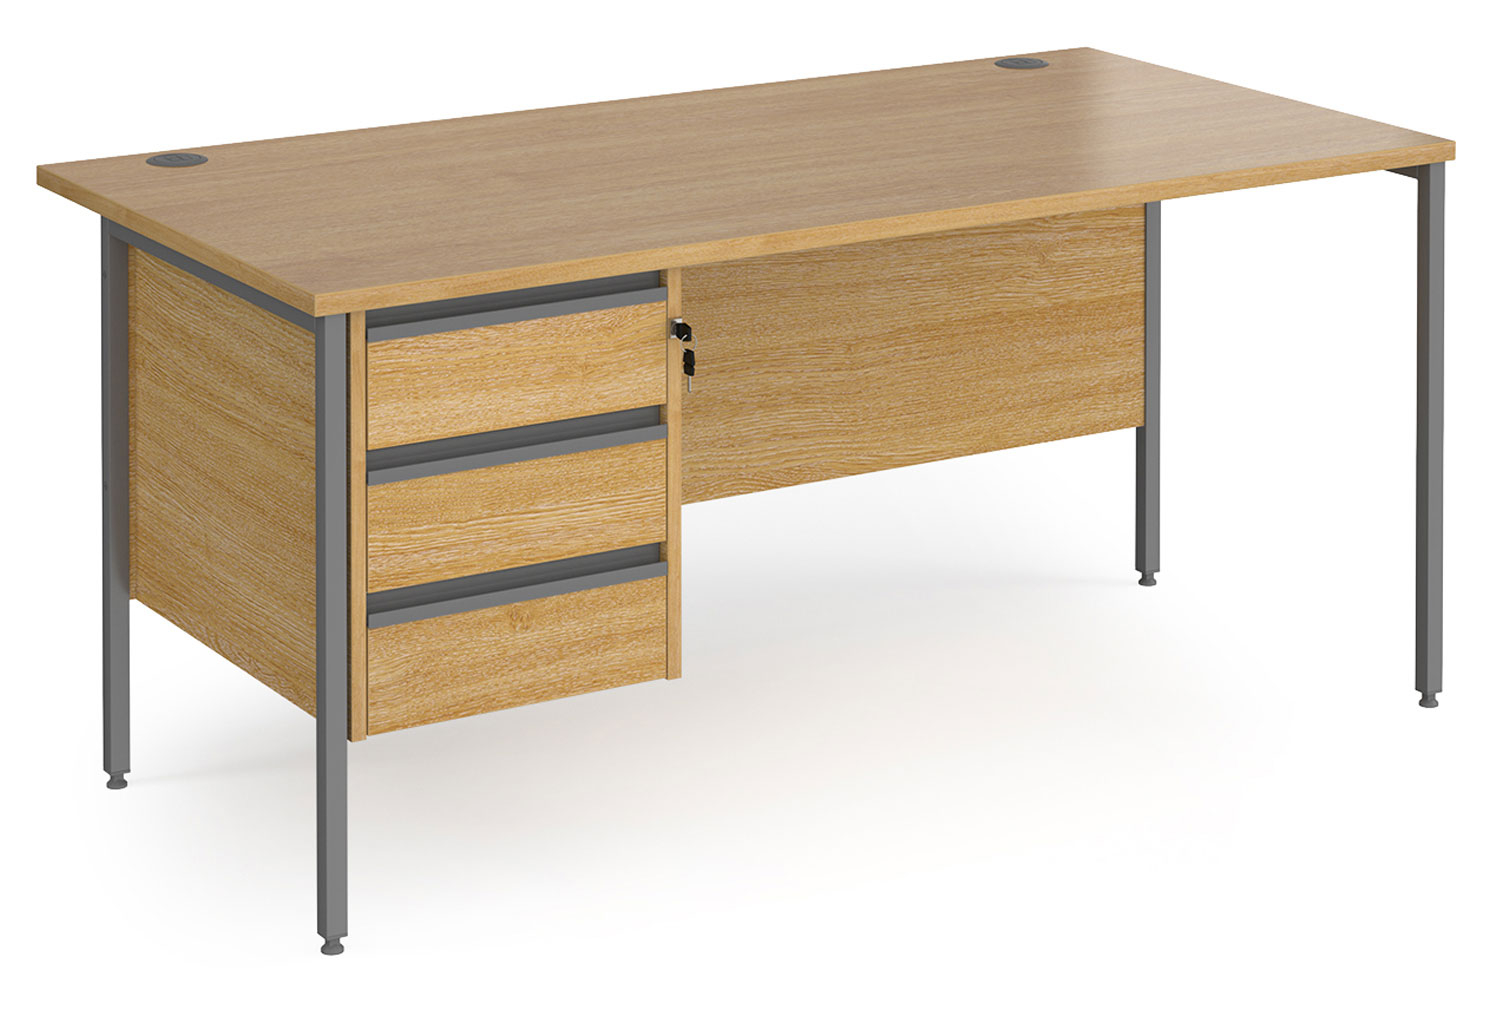 Value Line Classic+ Rectangular H-Leg Office Desk 3 Drawers (Graphite Leg), 160wx80dx73h (cm), Oak, Fully Installed